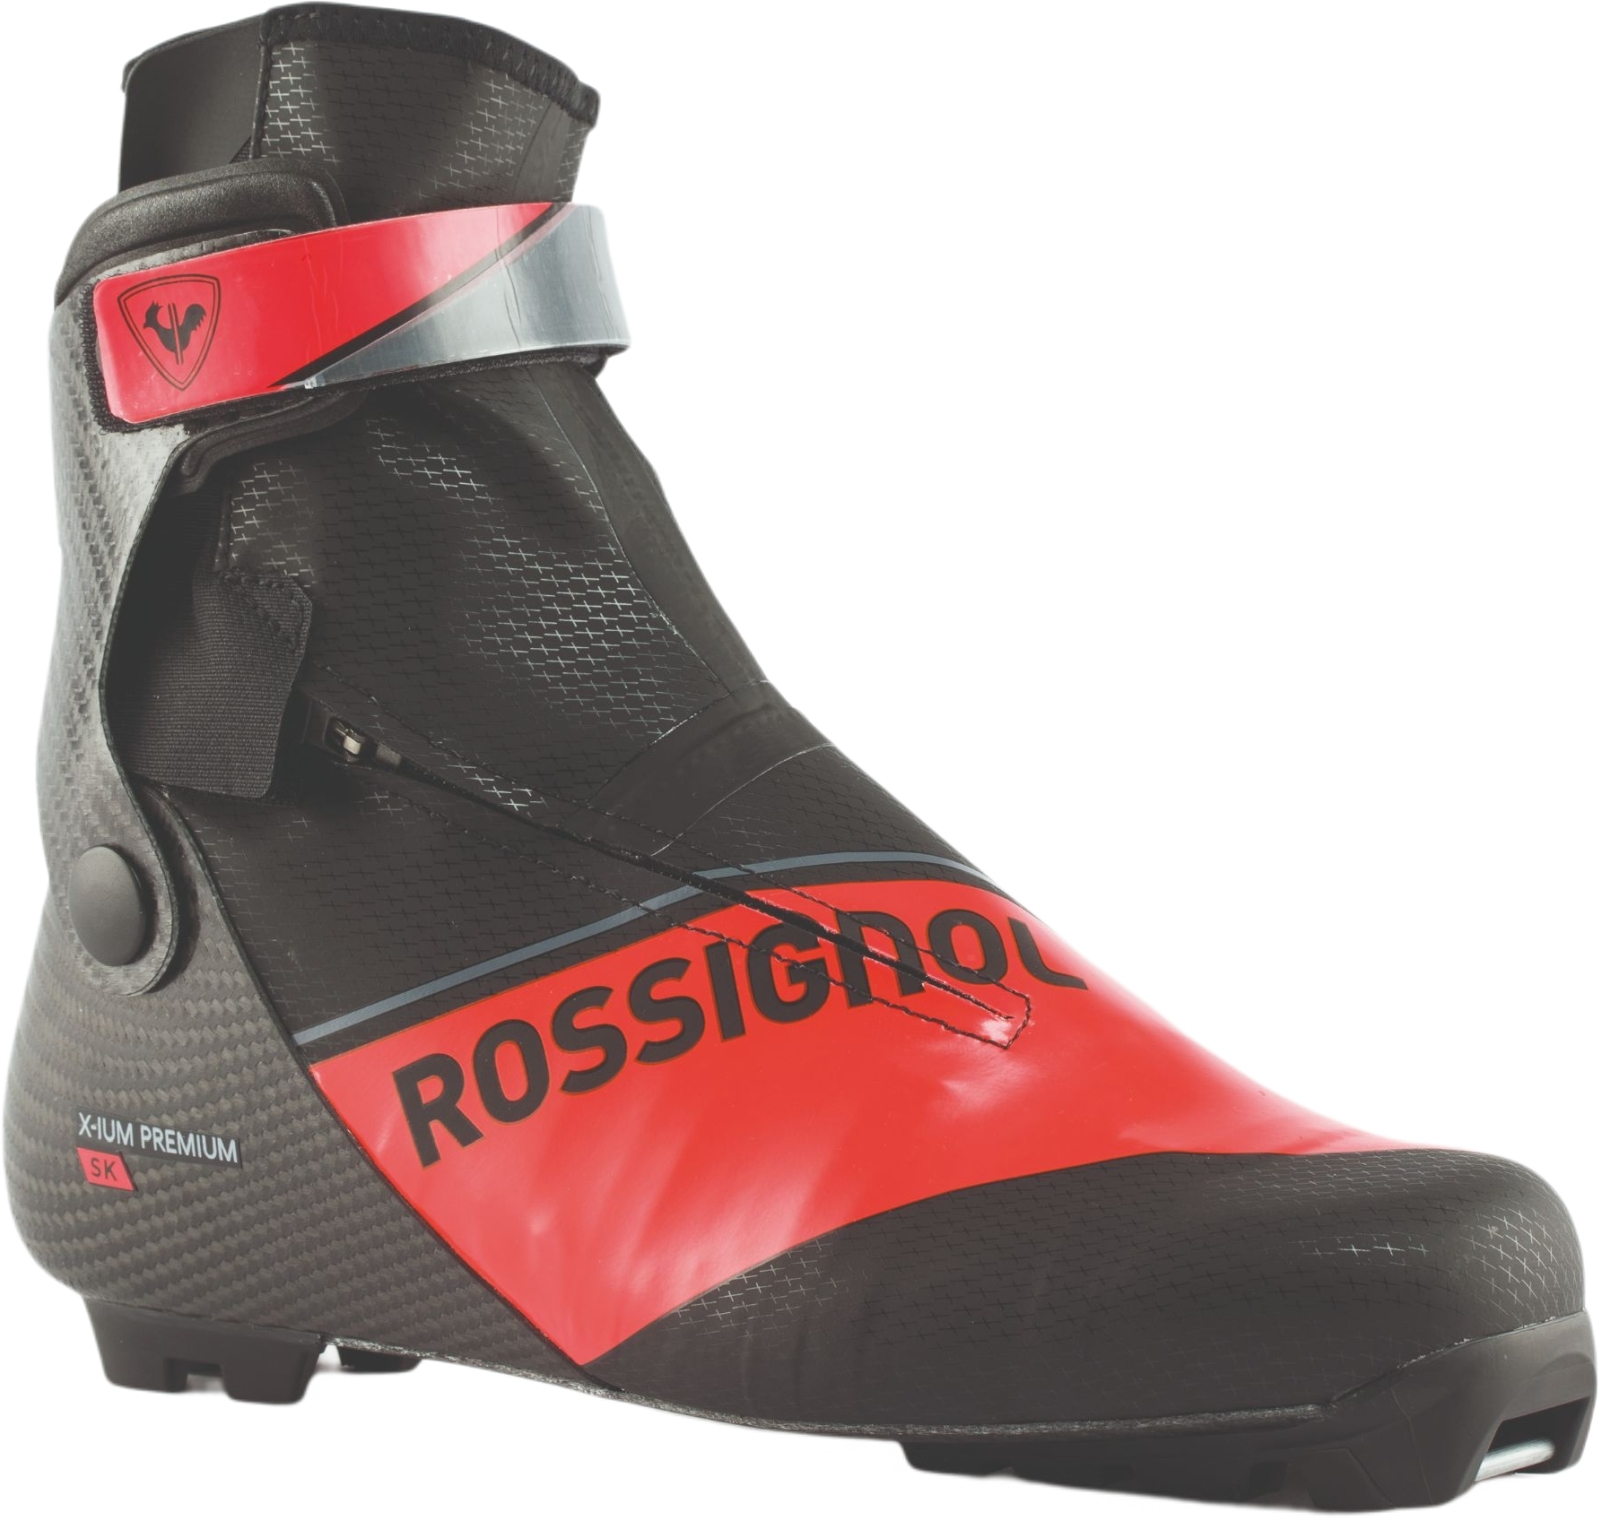 E-shop Rossignol X-IUM Carbon Premium Skate 445